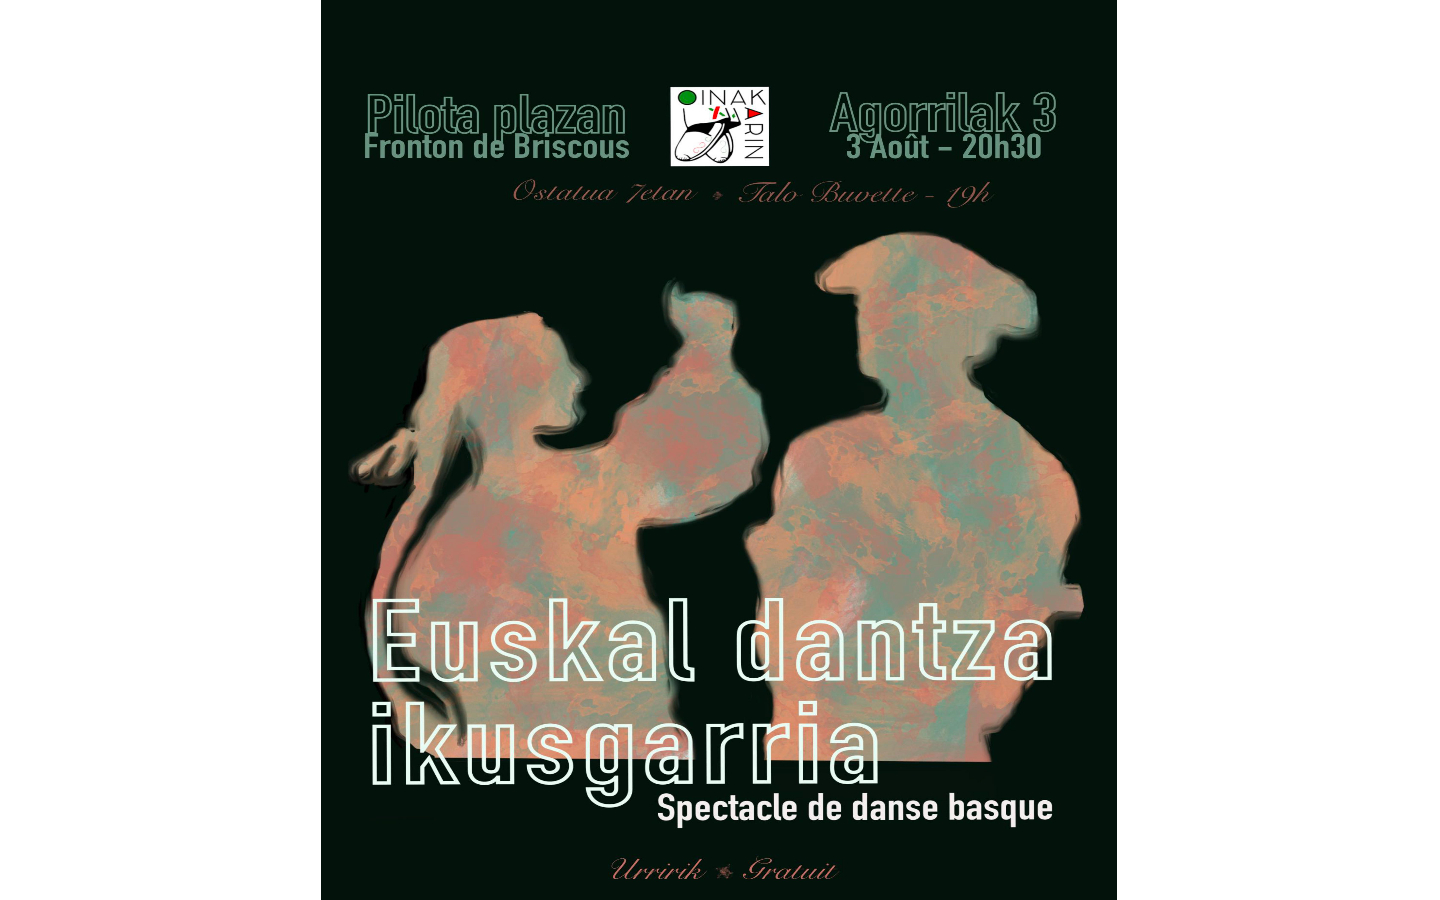 Spectacle de danse basque